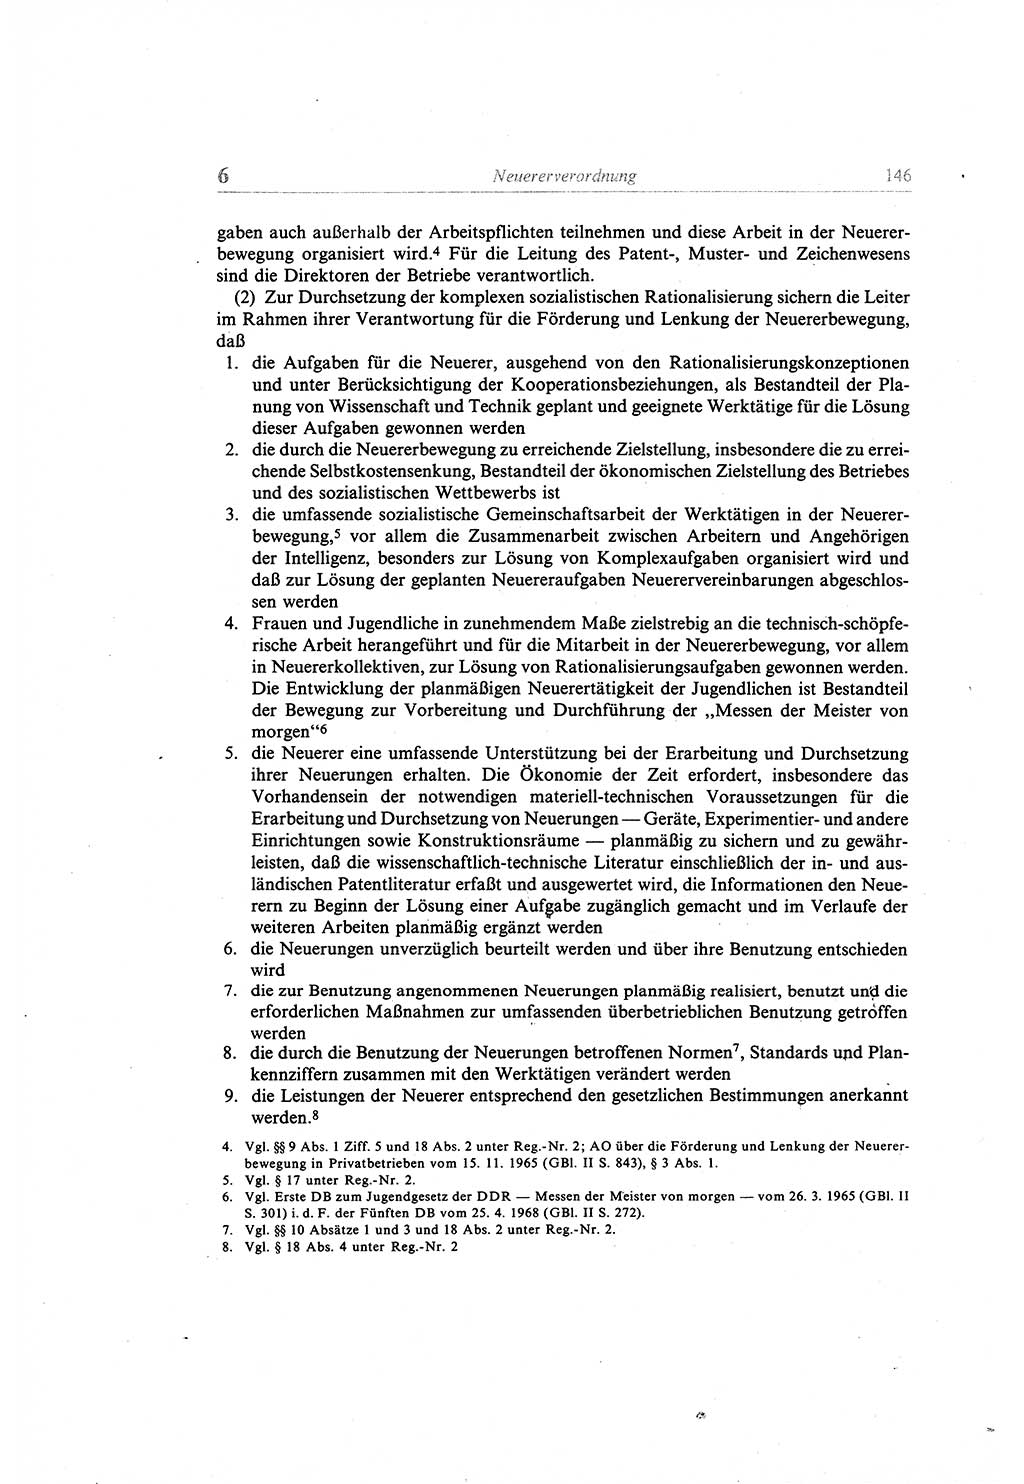 Gesetzbuch der Arbeit (GBA) und andere ausgewählte rechtliche Bestimmungen [Deutsche Demokratische Republik (DDR)] 1968, Seite 146 (GBA DDR 1968, S. 146)